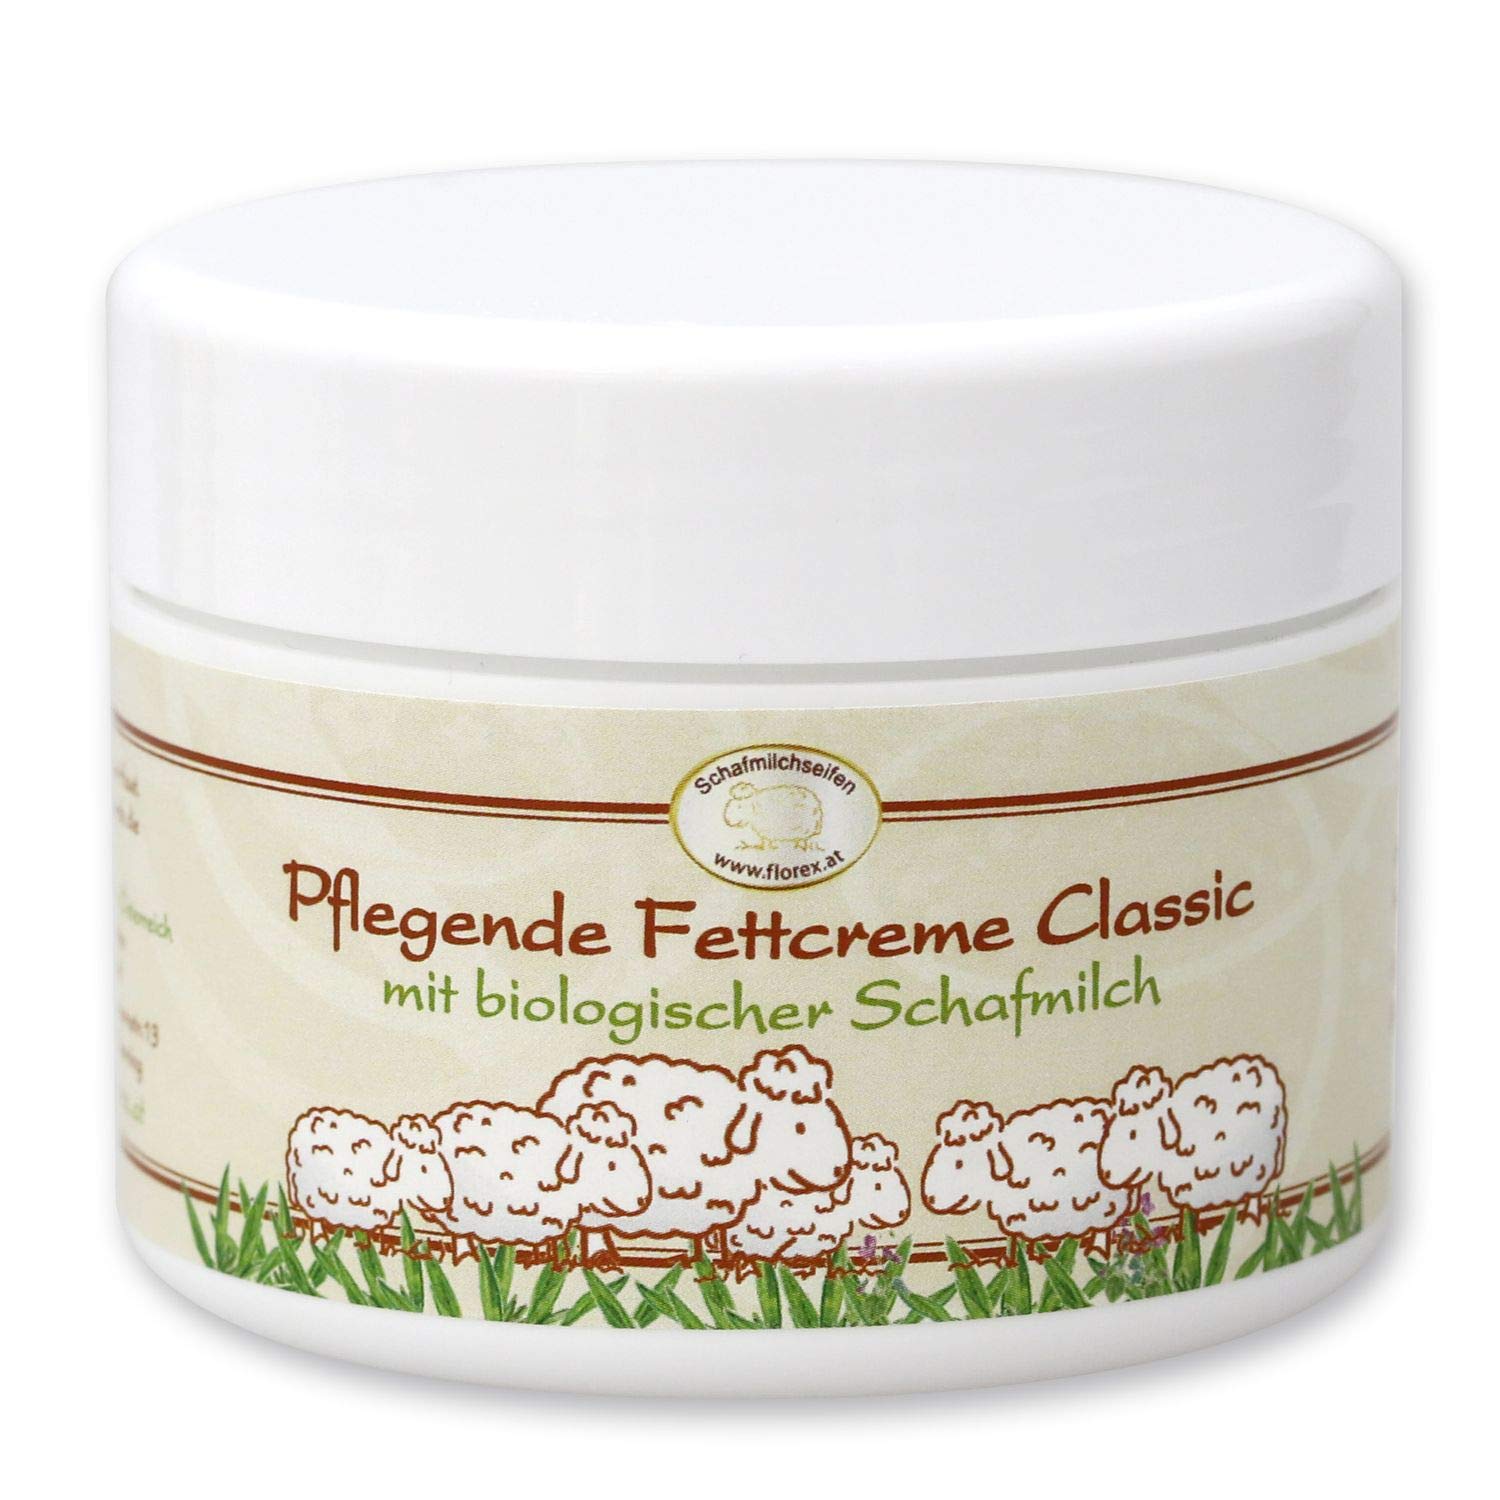 Florex pflegende Fettcreme Classic mit biologischer Schafmilch bei extrem trockener Haut mit Lanolin 125 ml 9602